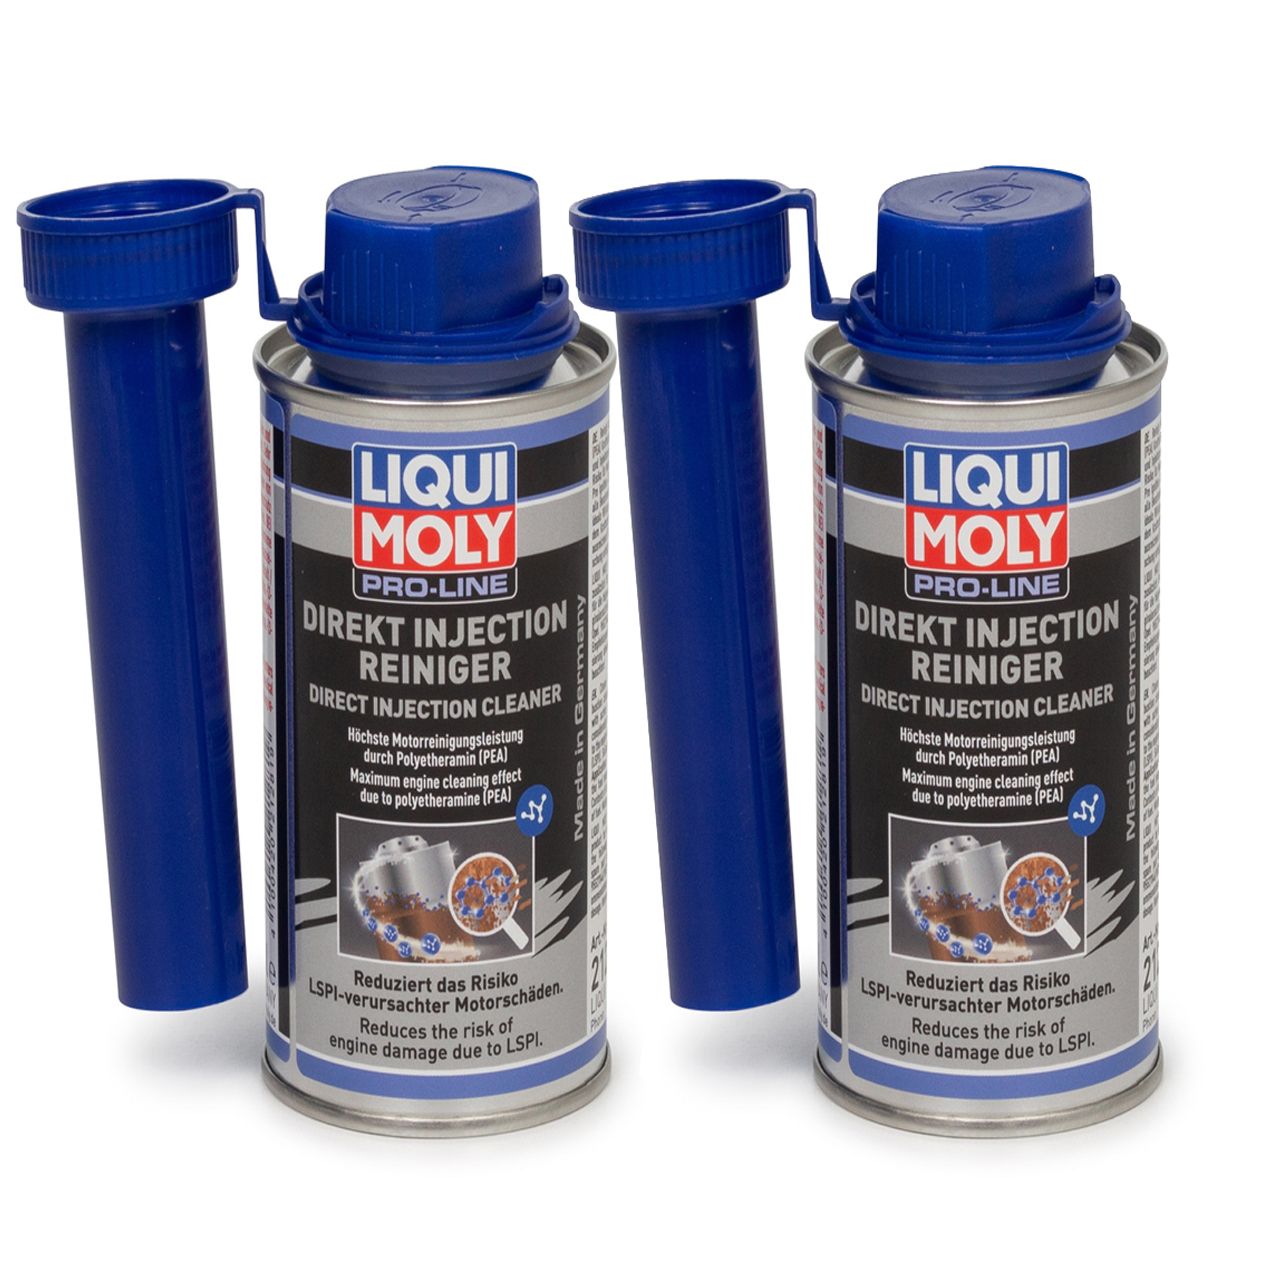 LIQUI MOLY 21281 PRO LINE DIREKT INJECTION REINIGER 240 ml Additiv für Benziner